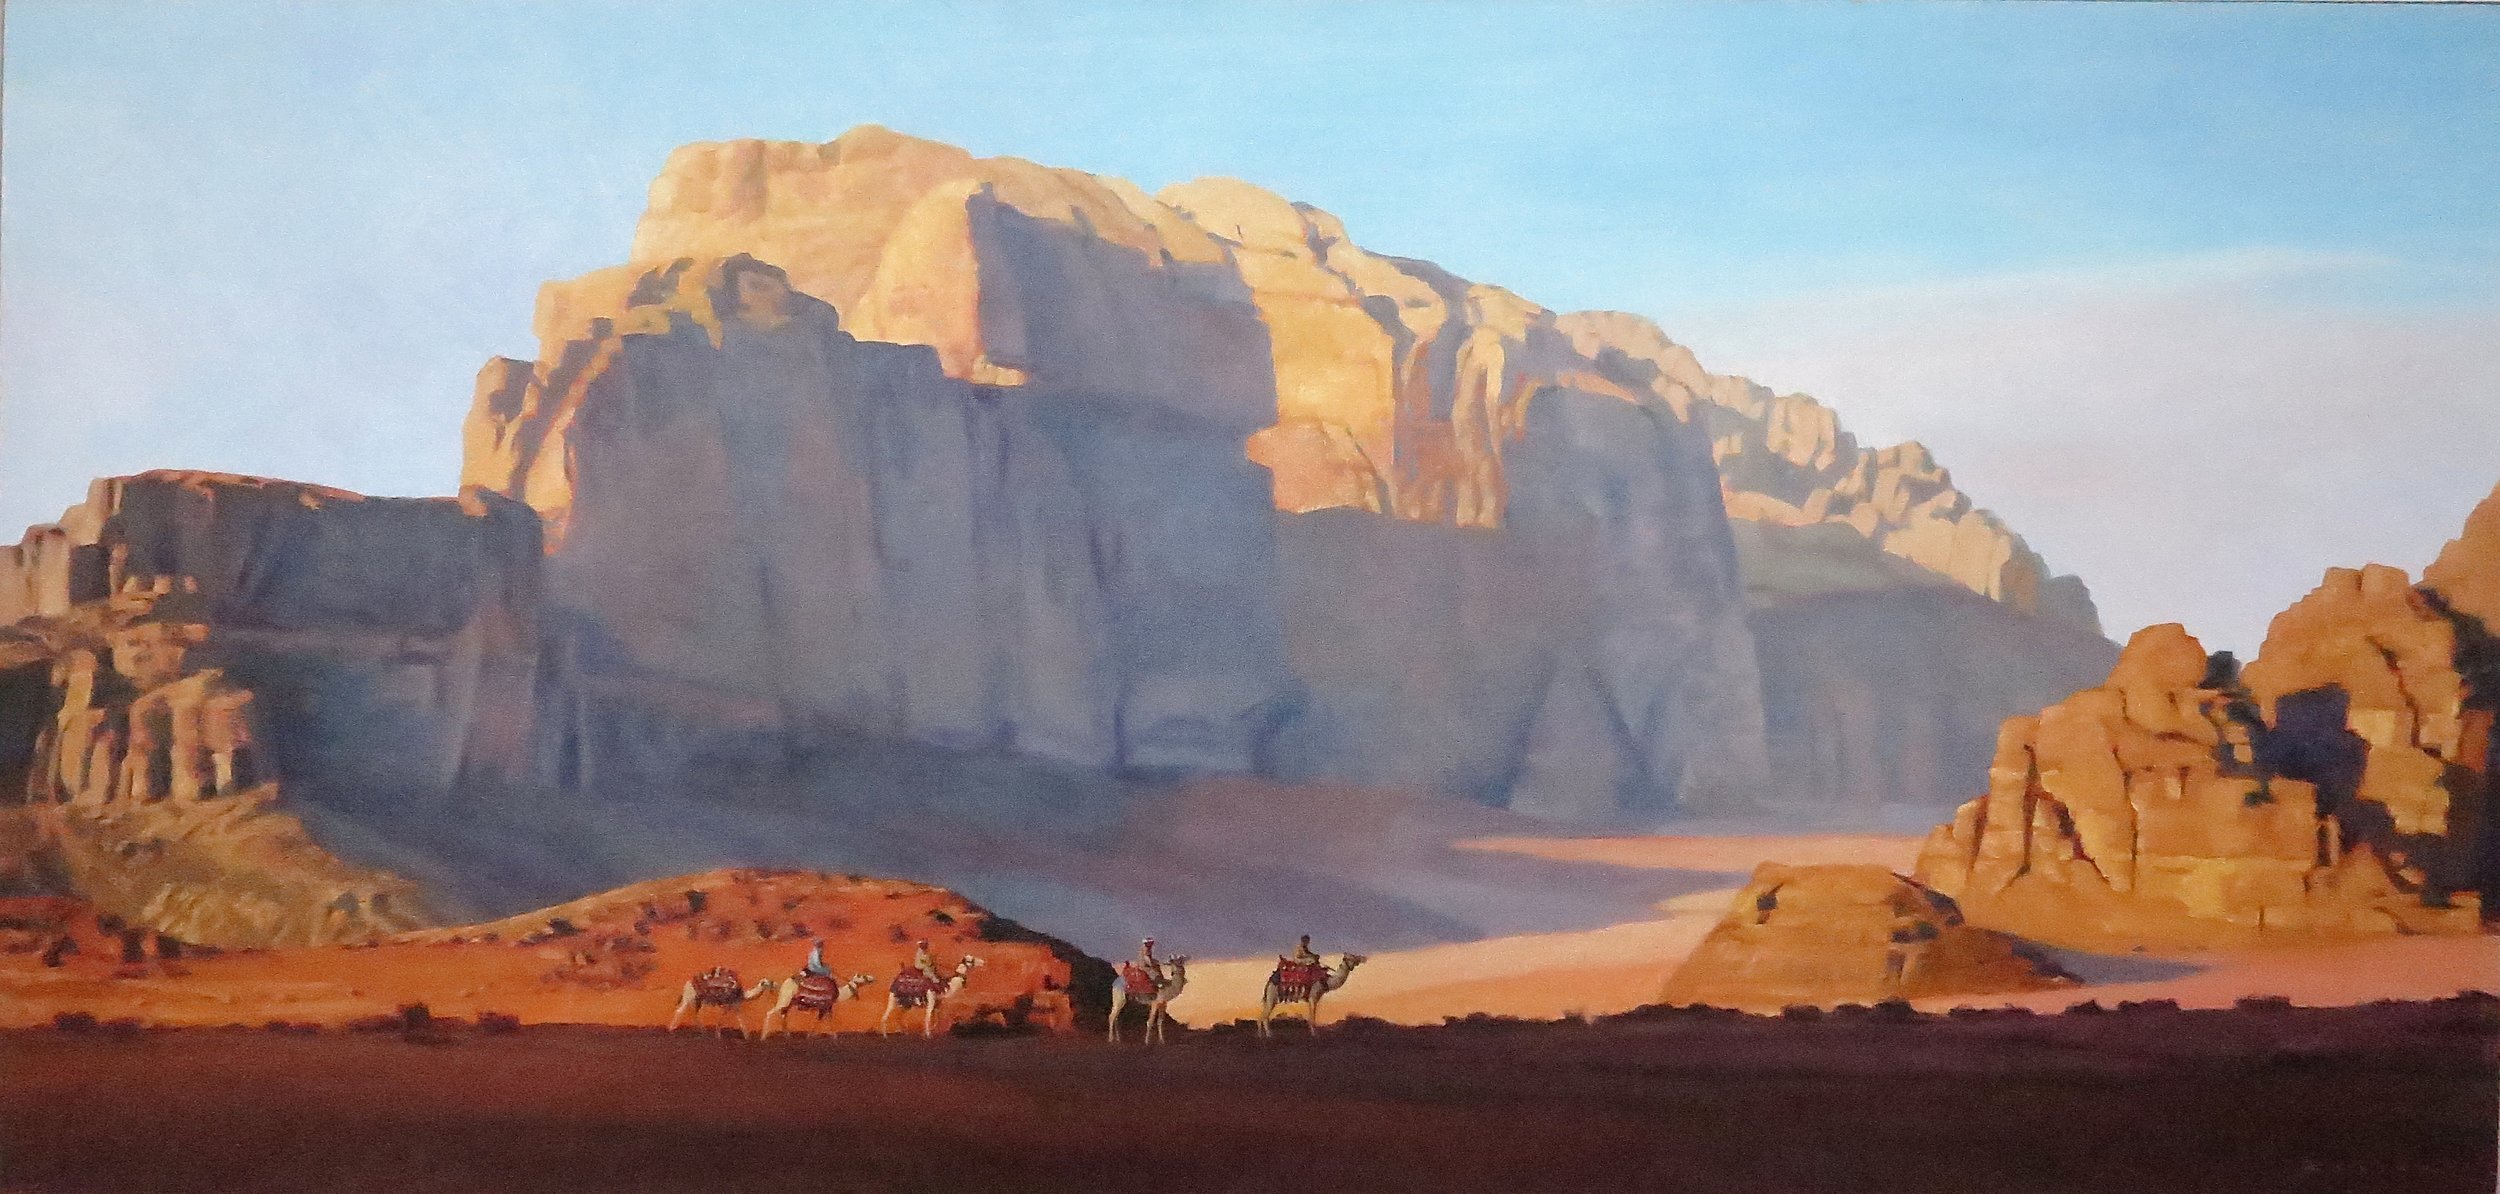  Wadi Rum 2/Jordan, 23 x 43, oil 